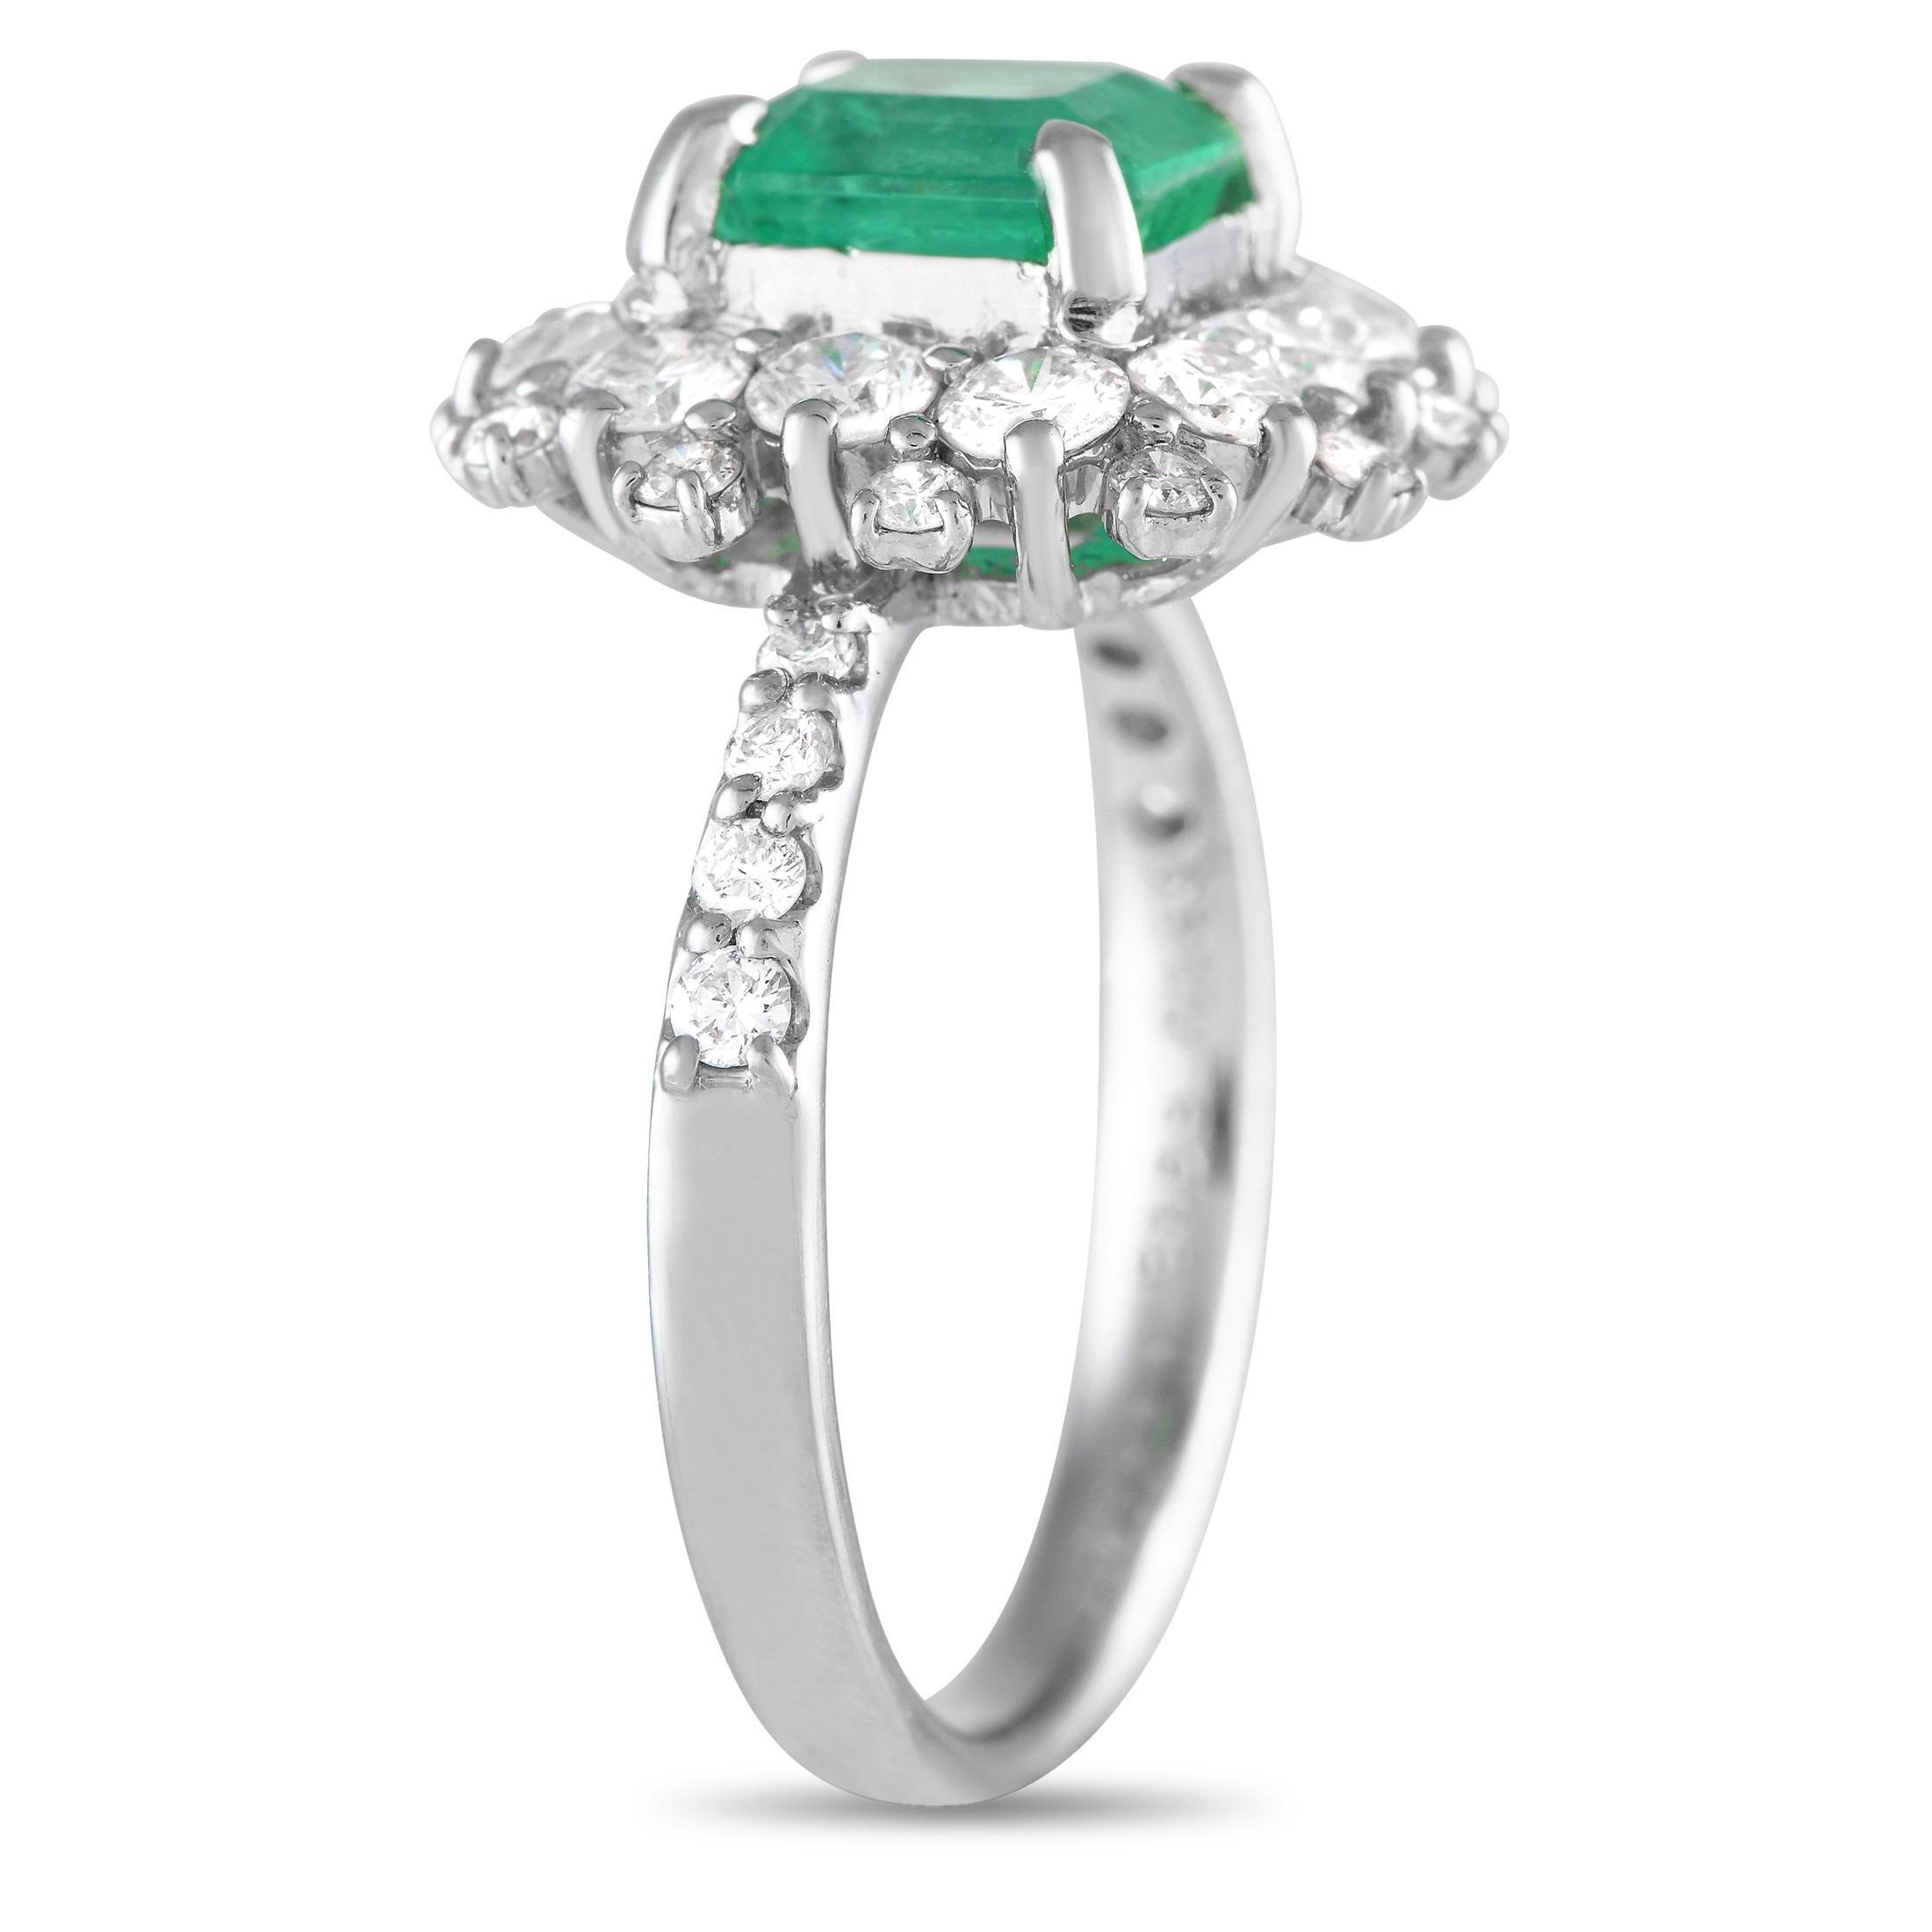 Dieser frische und feminine Ring mit Diamanten und Smaragden ist ein unkonventioneller, aber unbestreitbar beeindruckender Verlobungsring. Er ist mit einem 950er Platinband mit vier spitz zulaufenden Diamanten auf jeder Schulter versehen. Ein 1,53